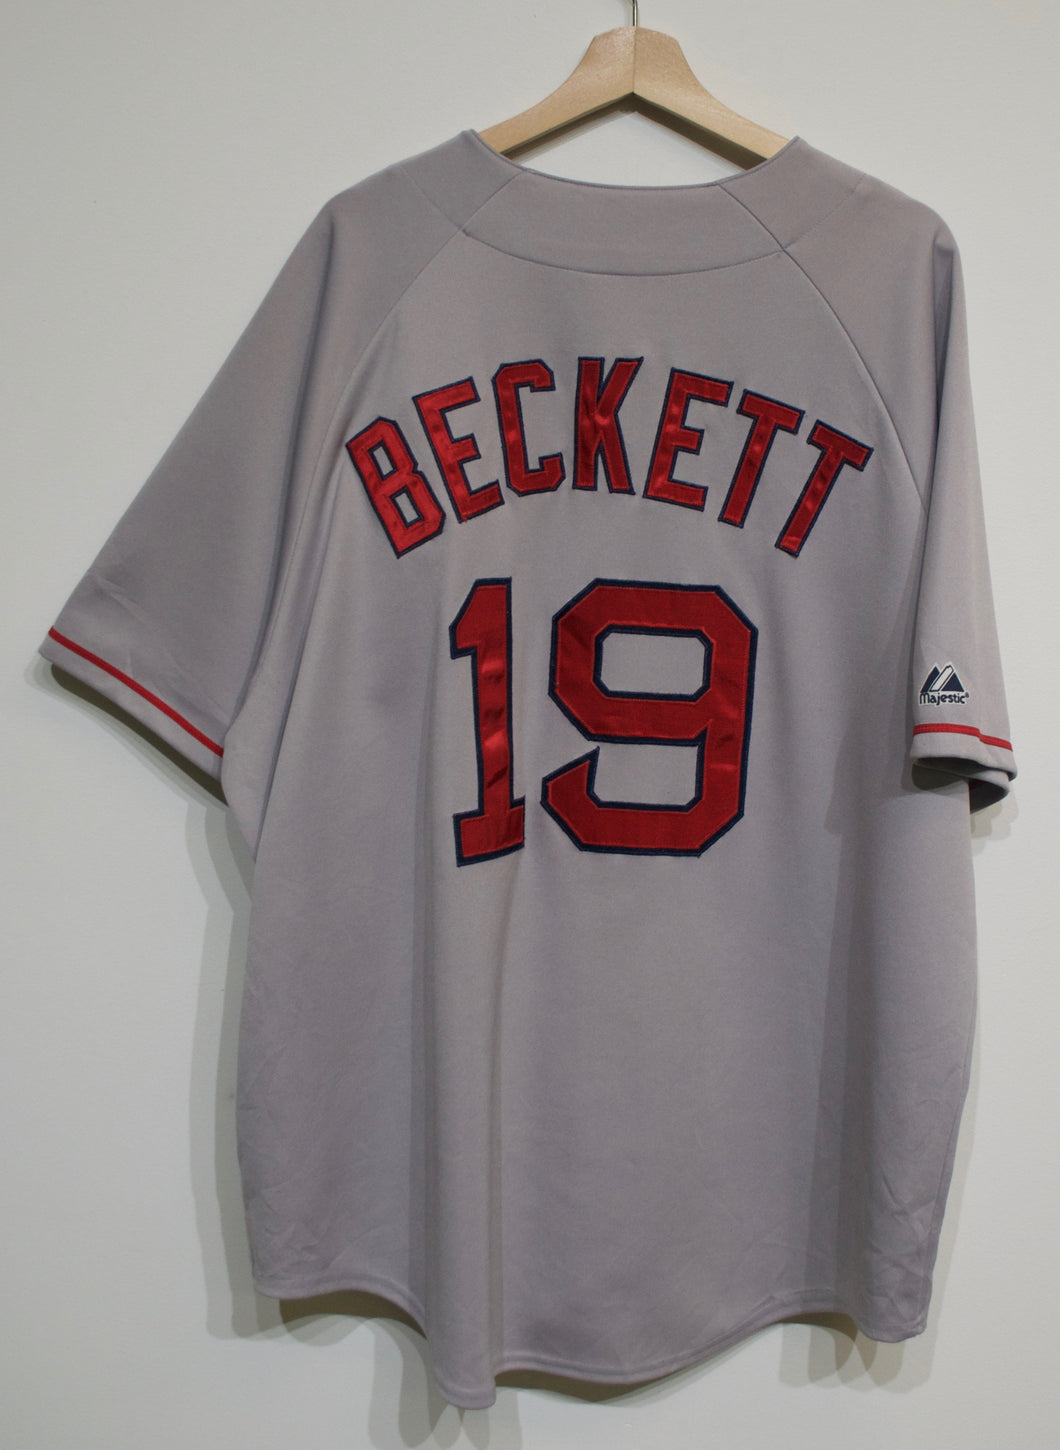 Josh Beckett Red Sox Jersey sz XXL